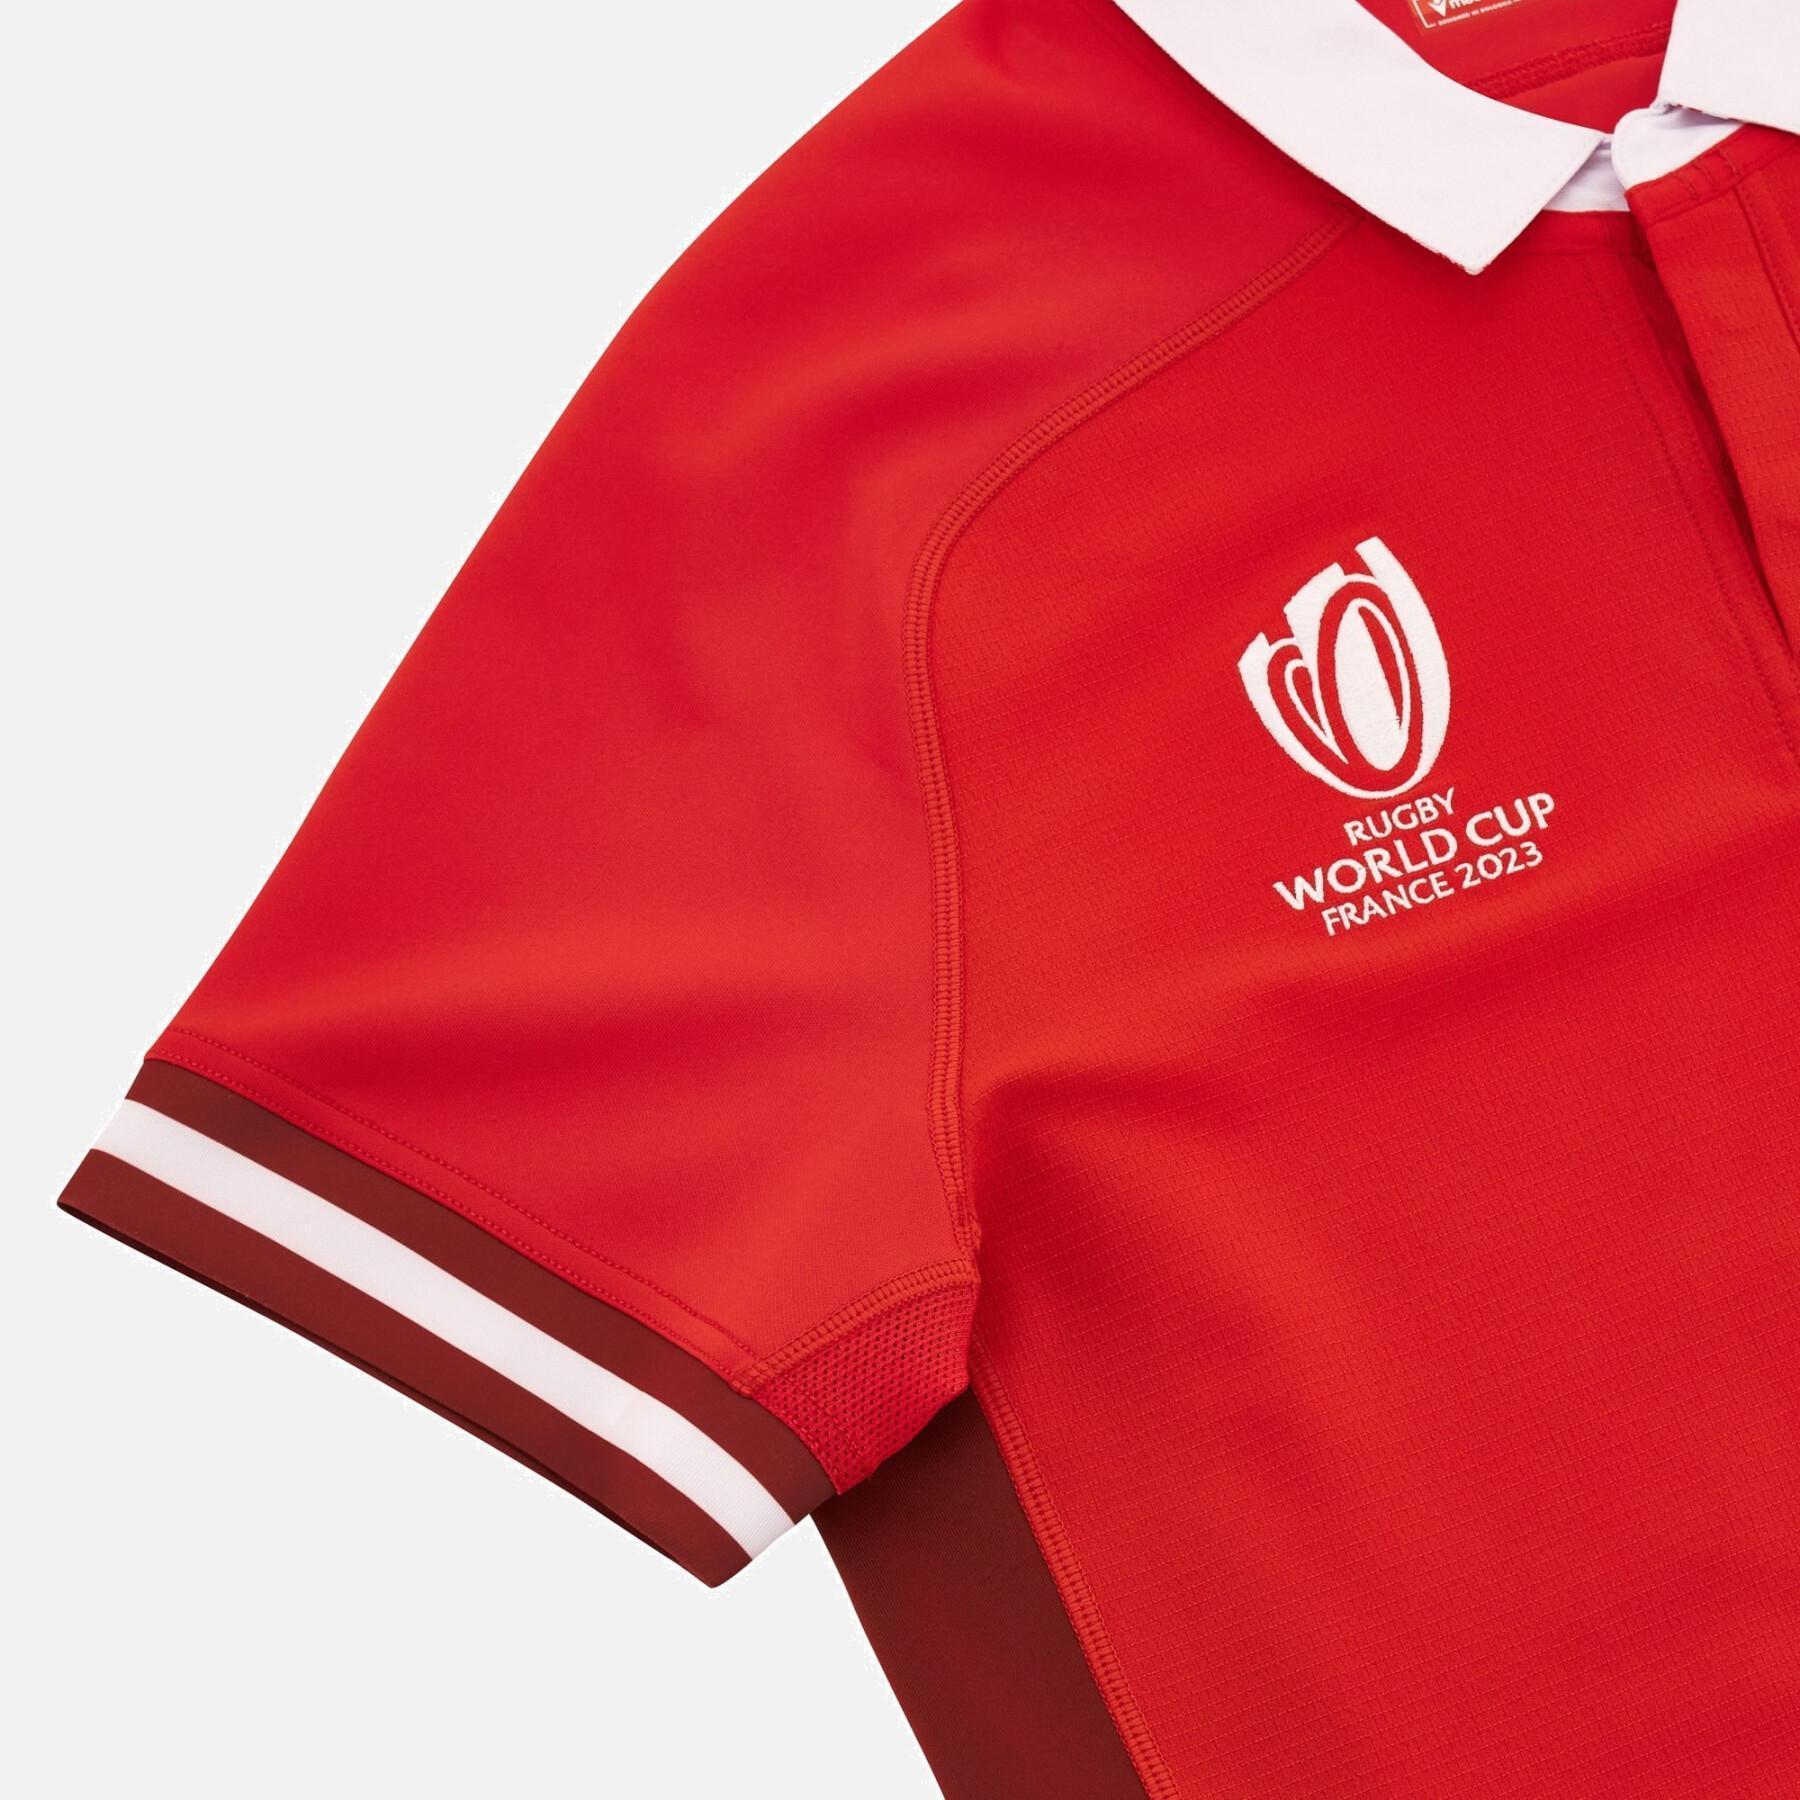 Children's slim polo shirt Pays de Galles RWC 2023